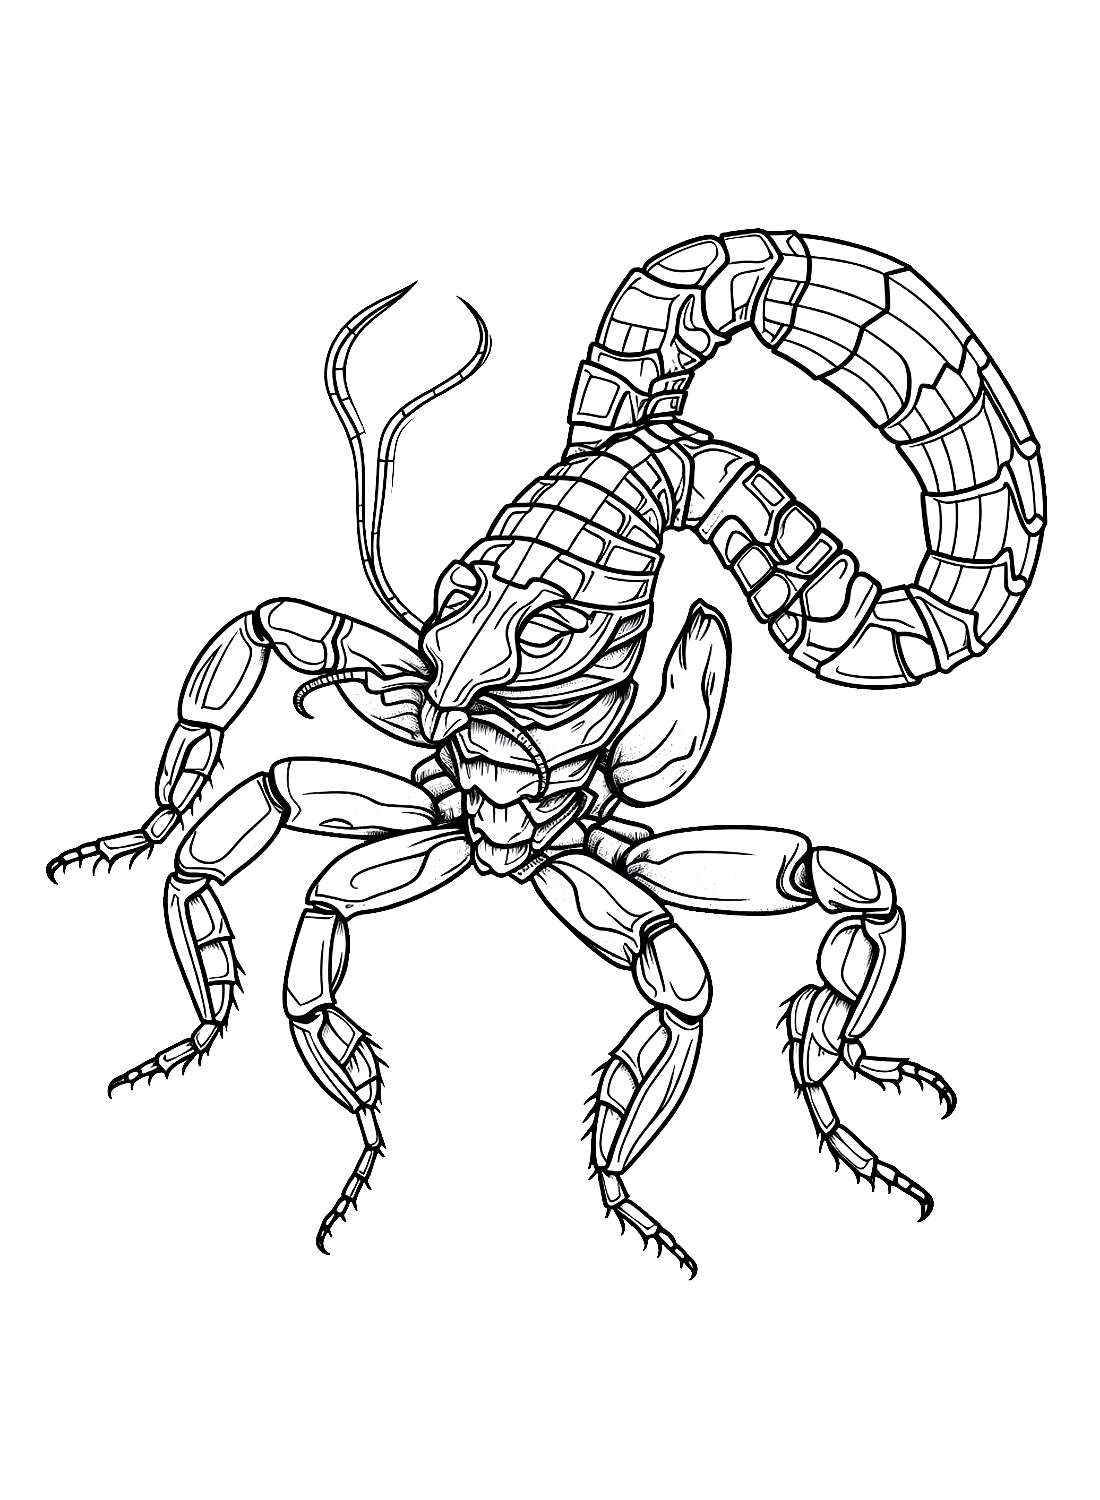 Un escorpión de dibujos animados de Scorpions